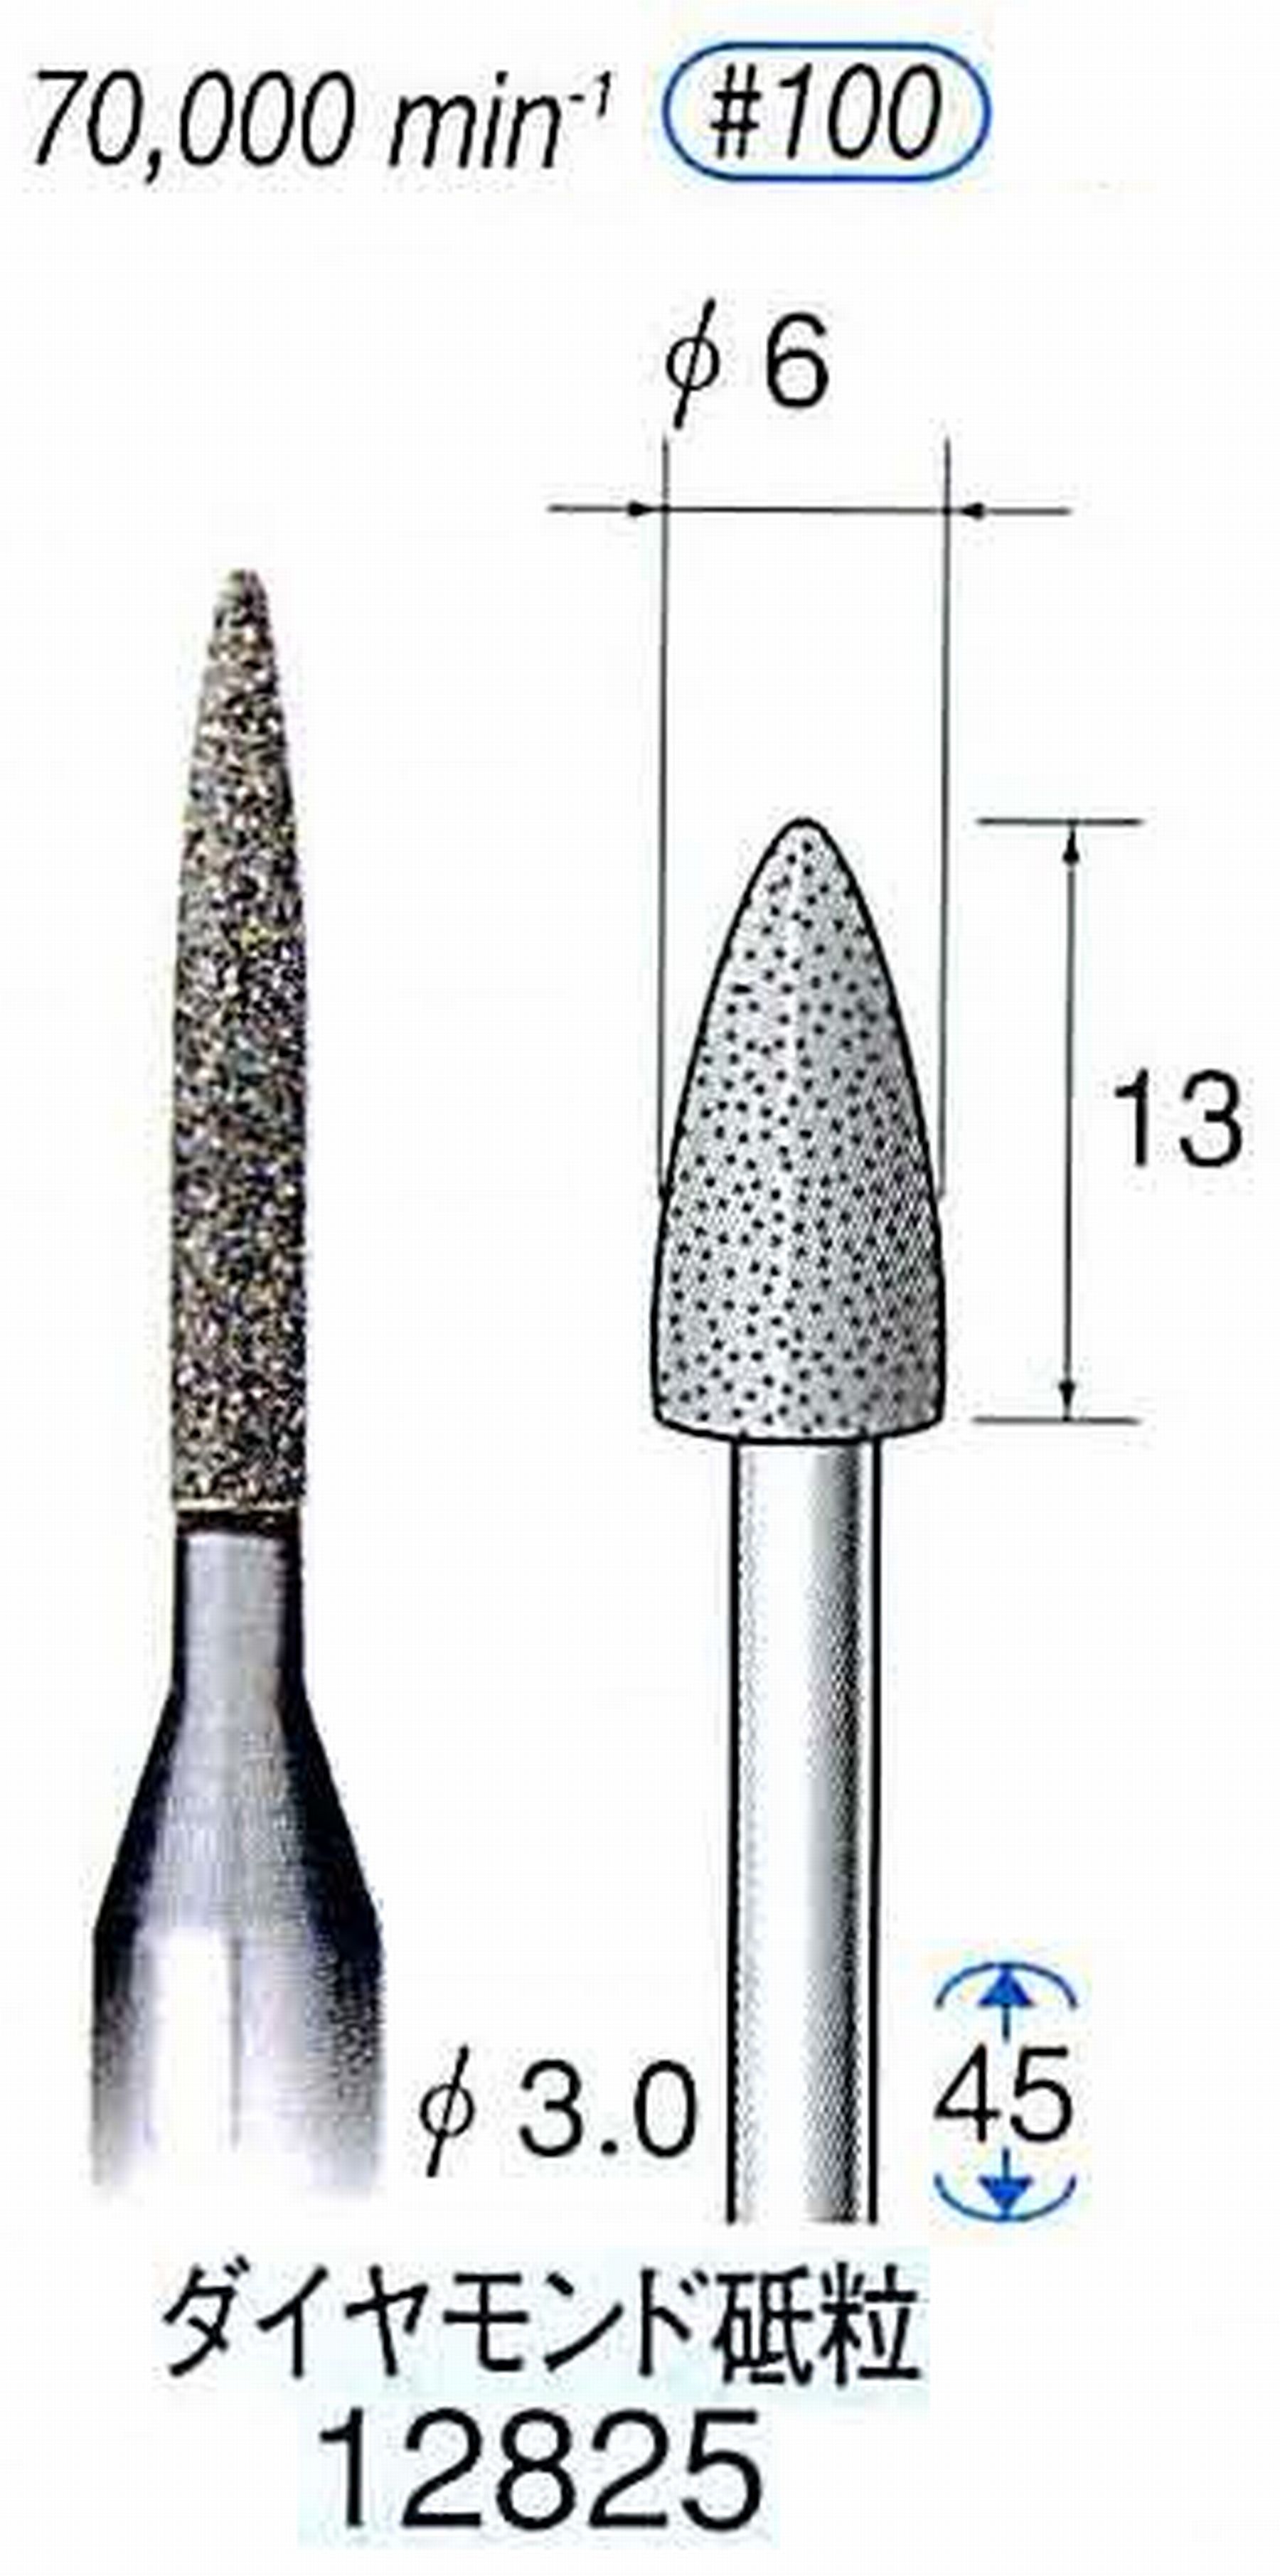 ナカニシ/NAKANISHI クラフト・ホビー用ダイヤモンドバー ダイヤモンド砥粒 軸径(シャンク)φ3.0mm 12825